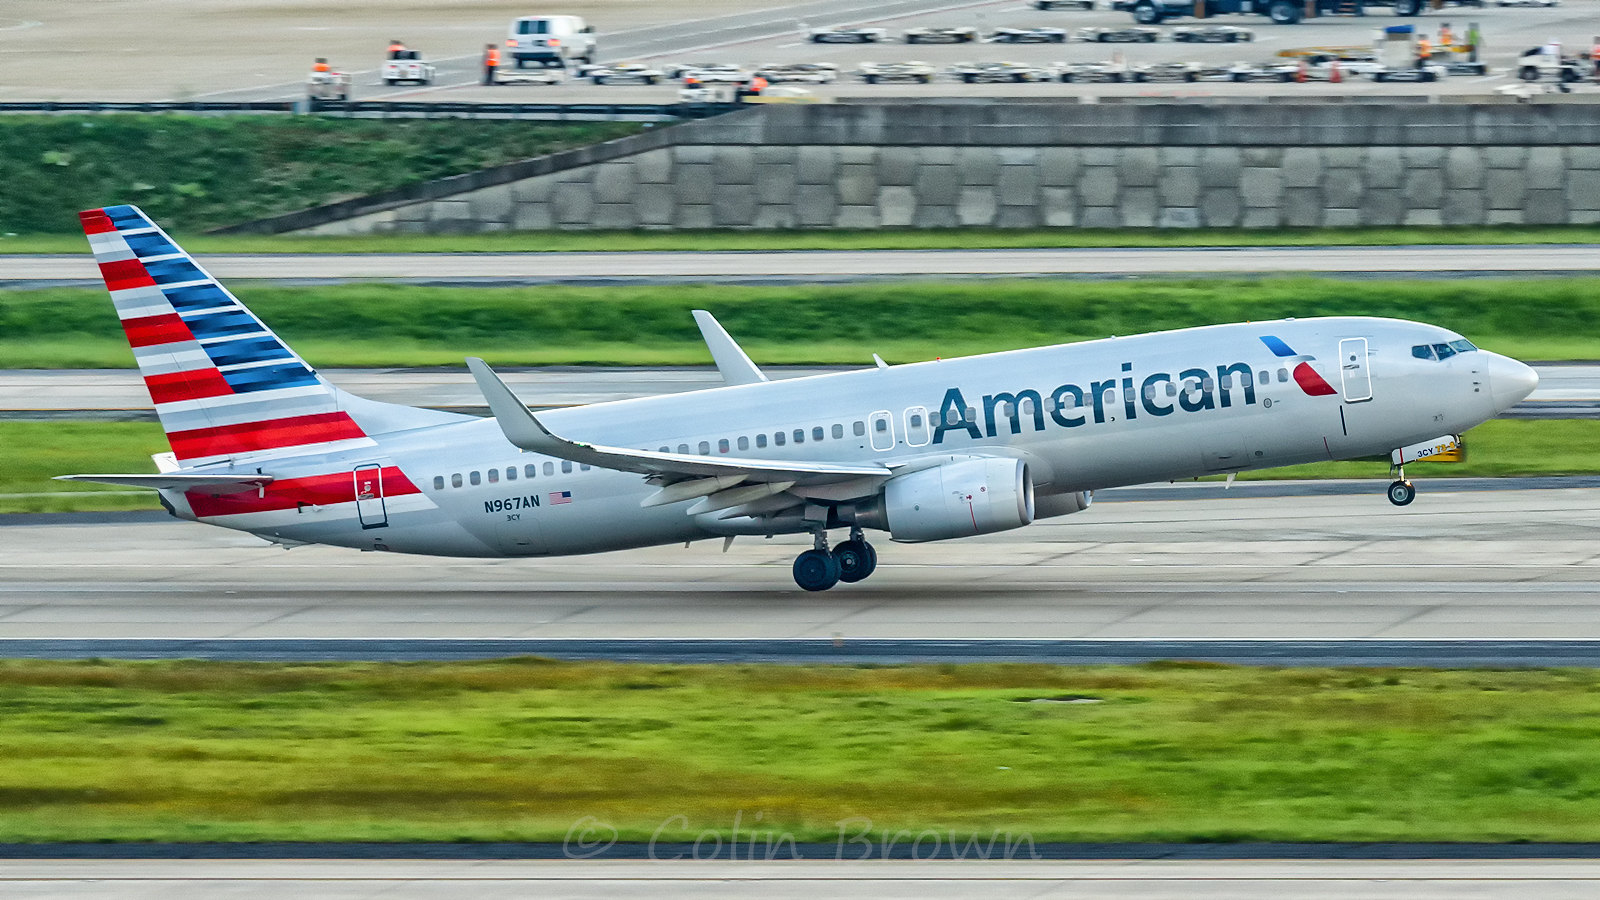 Un avión de American Airlines en una pista de aterrizaje | Foto: flickr.com